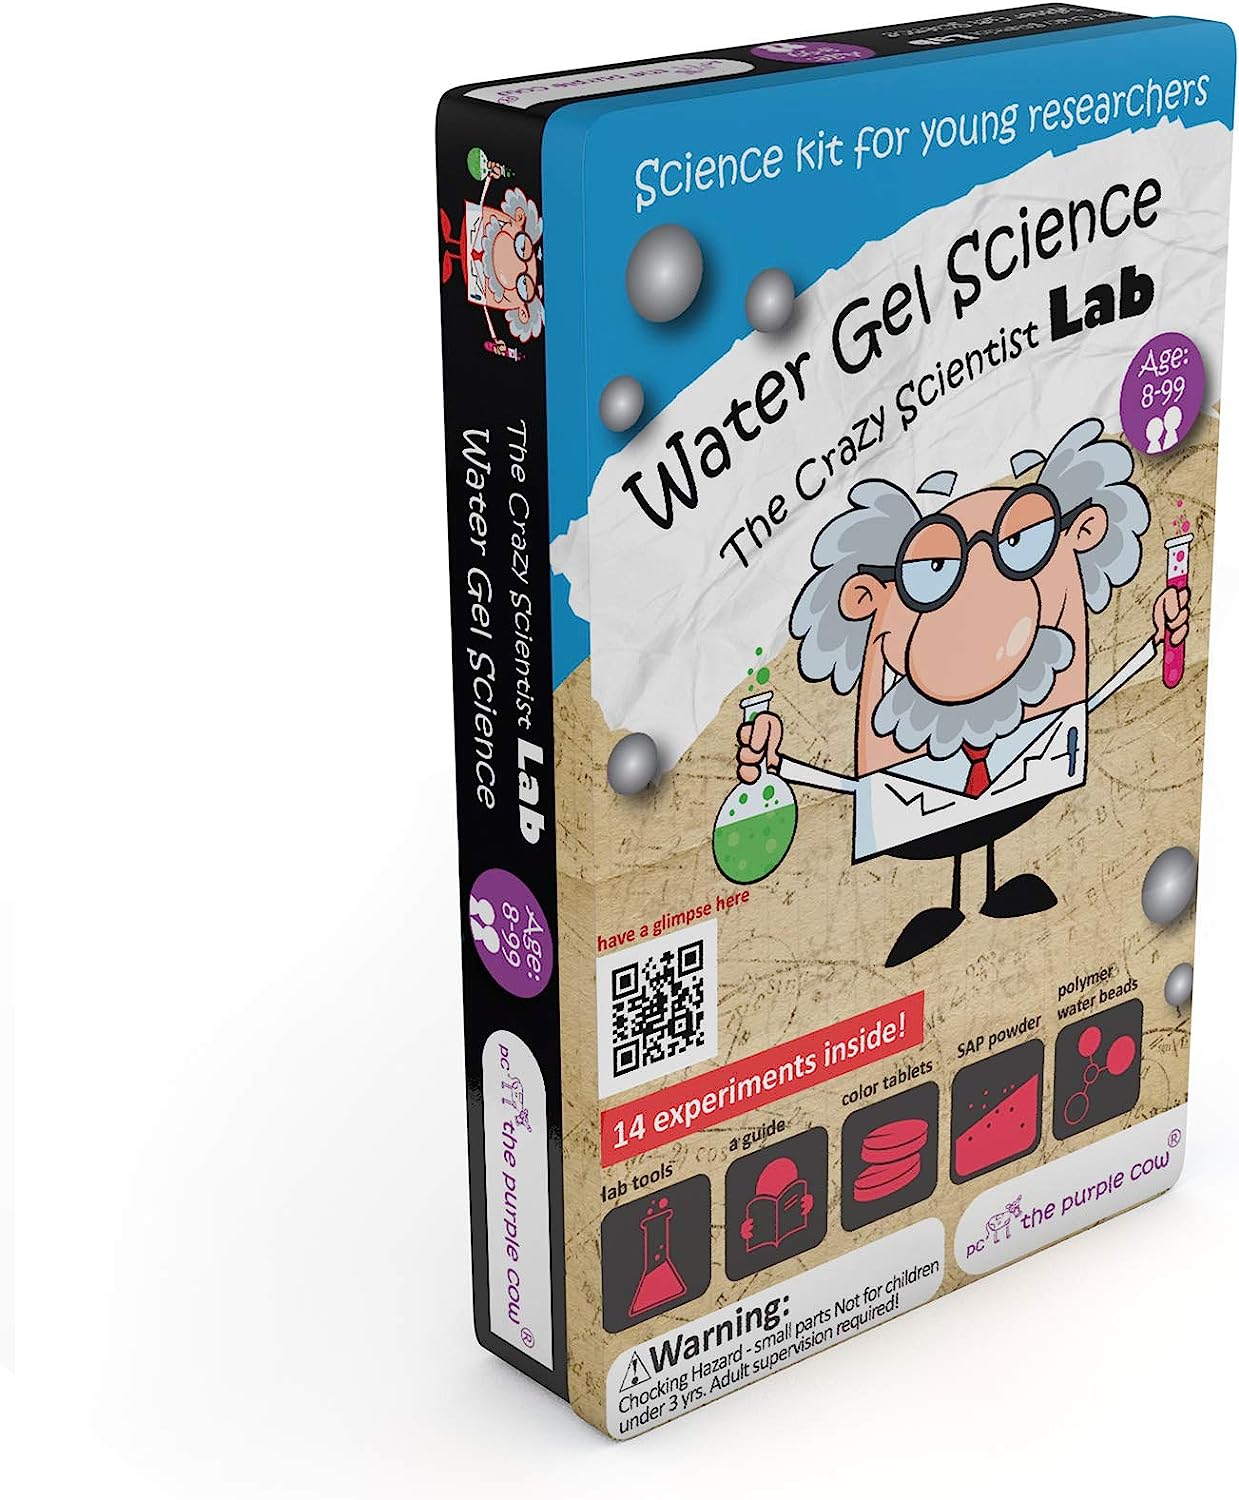 LAB Water Gel Science Kit